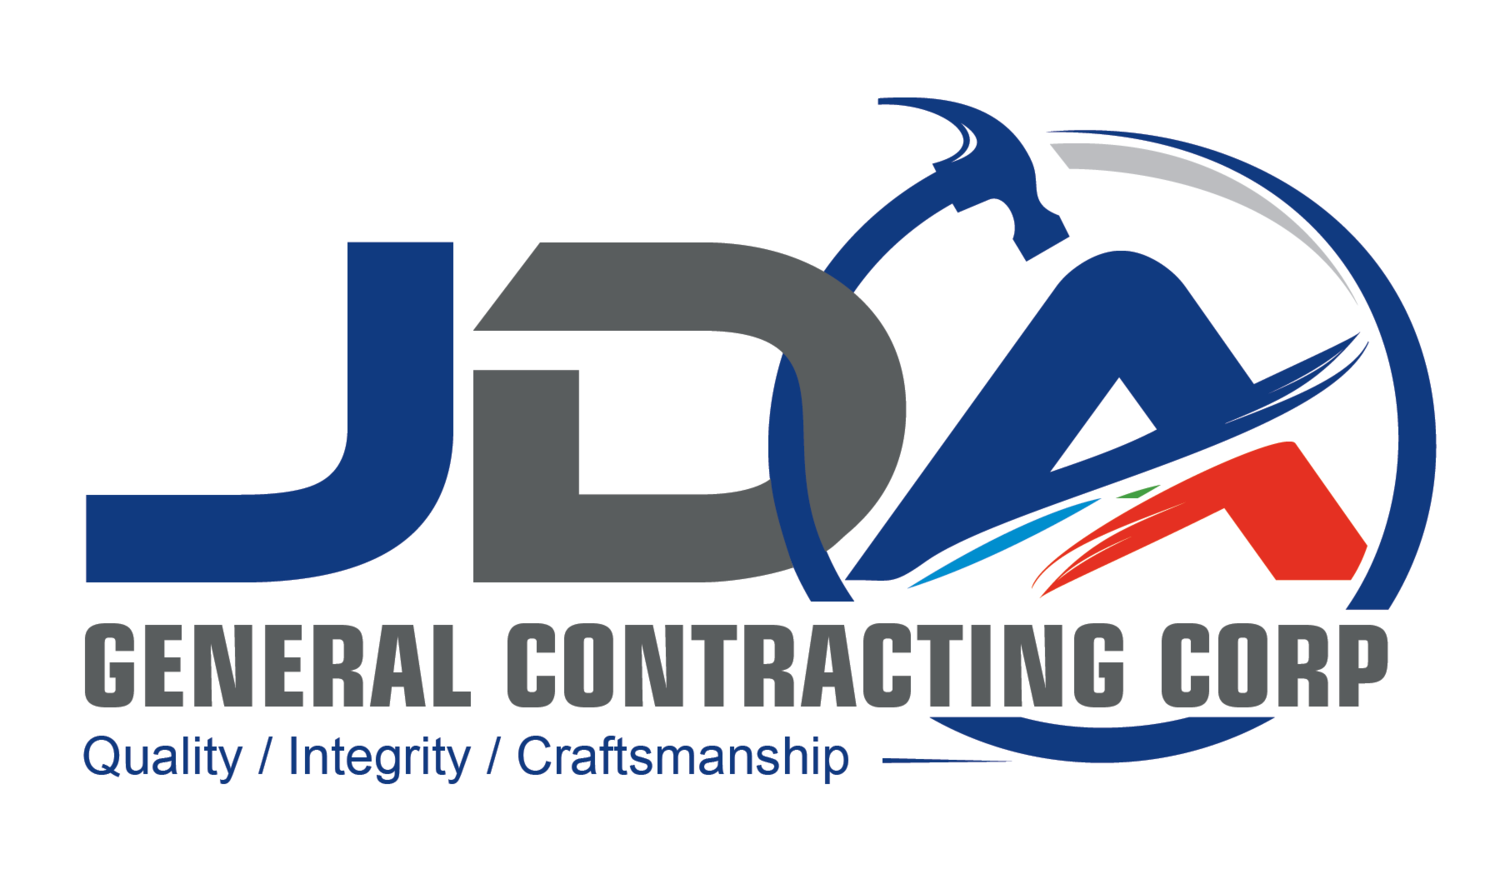 JDA General Contracting Corp